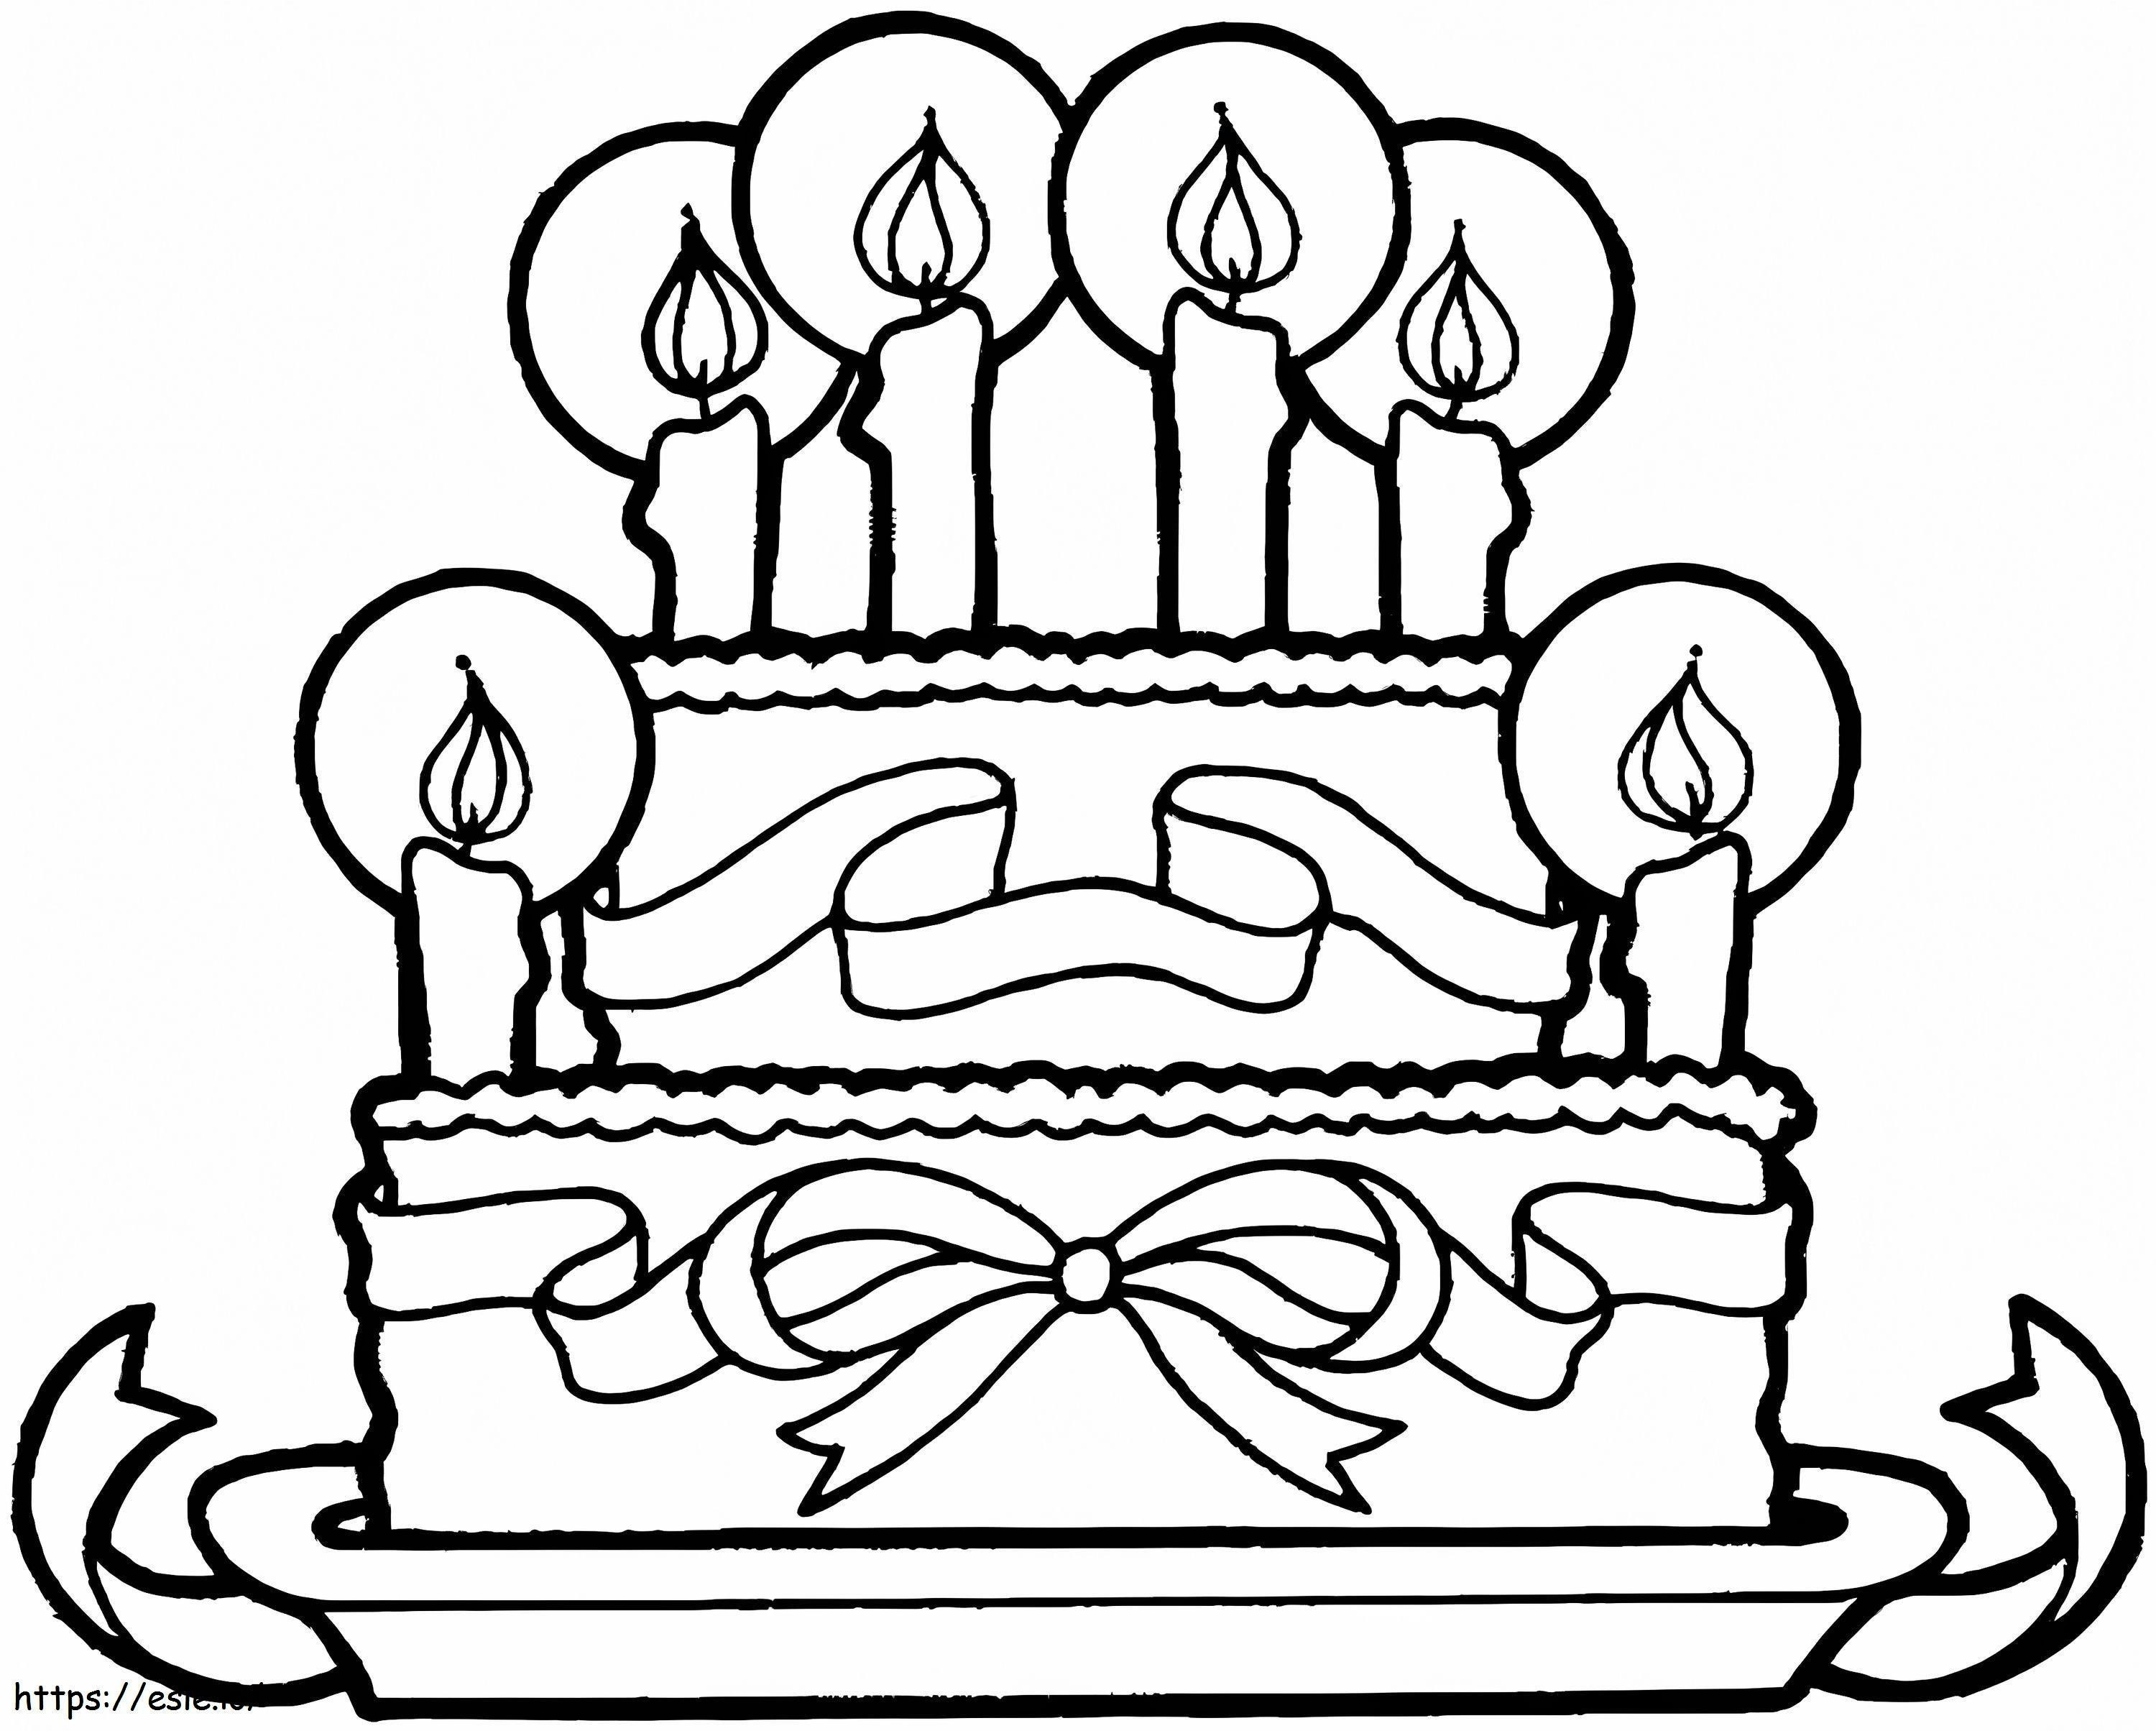 Coloriage Gâteau d'anniversaire simple à imprimer dessin